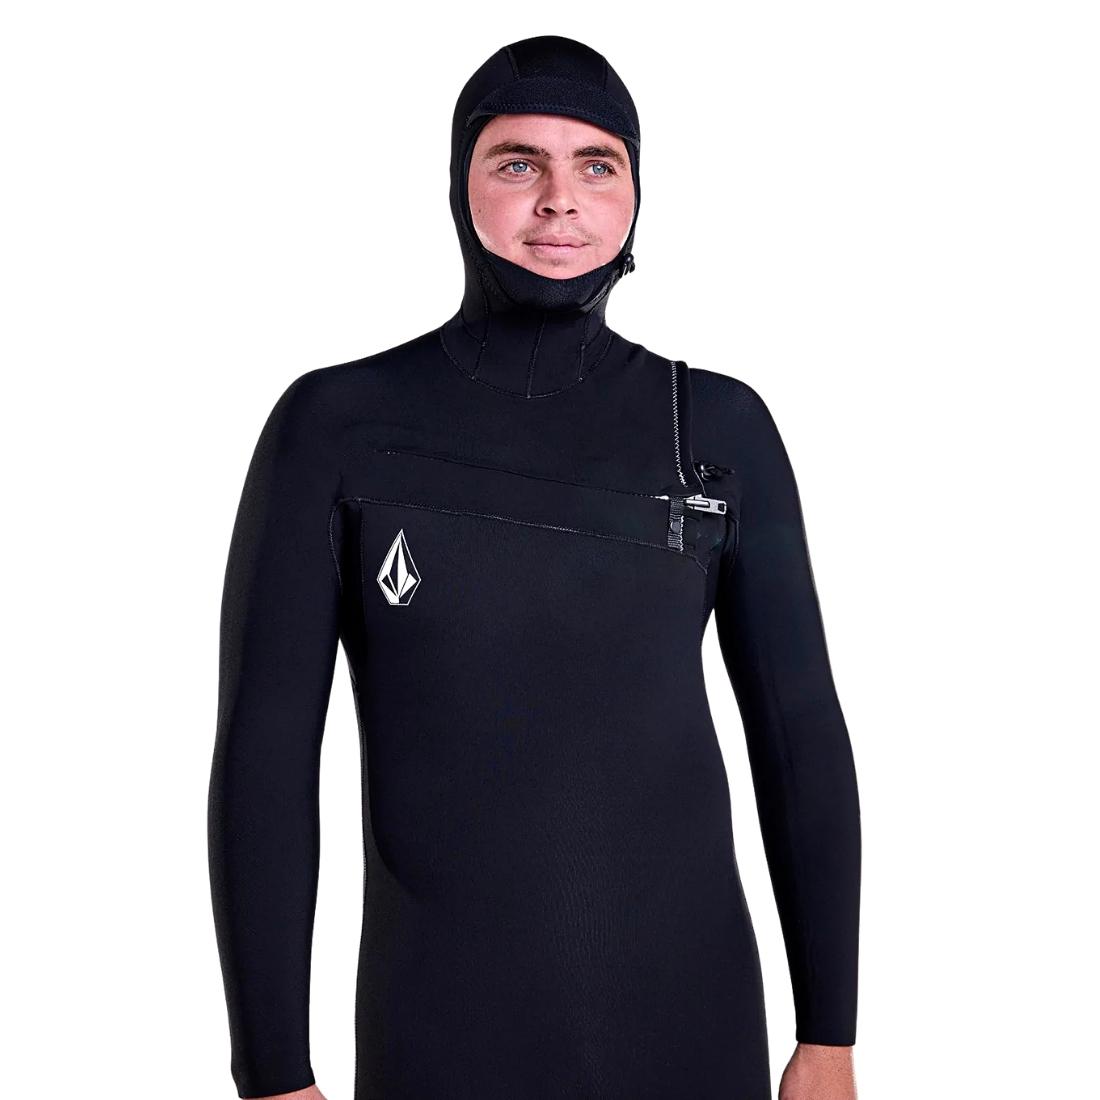 Volcom 5/4/3mm Hooded Modulator Chest Zip Wetsuit - Black - Mens Full Length Wetsuit by Volcom